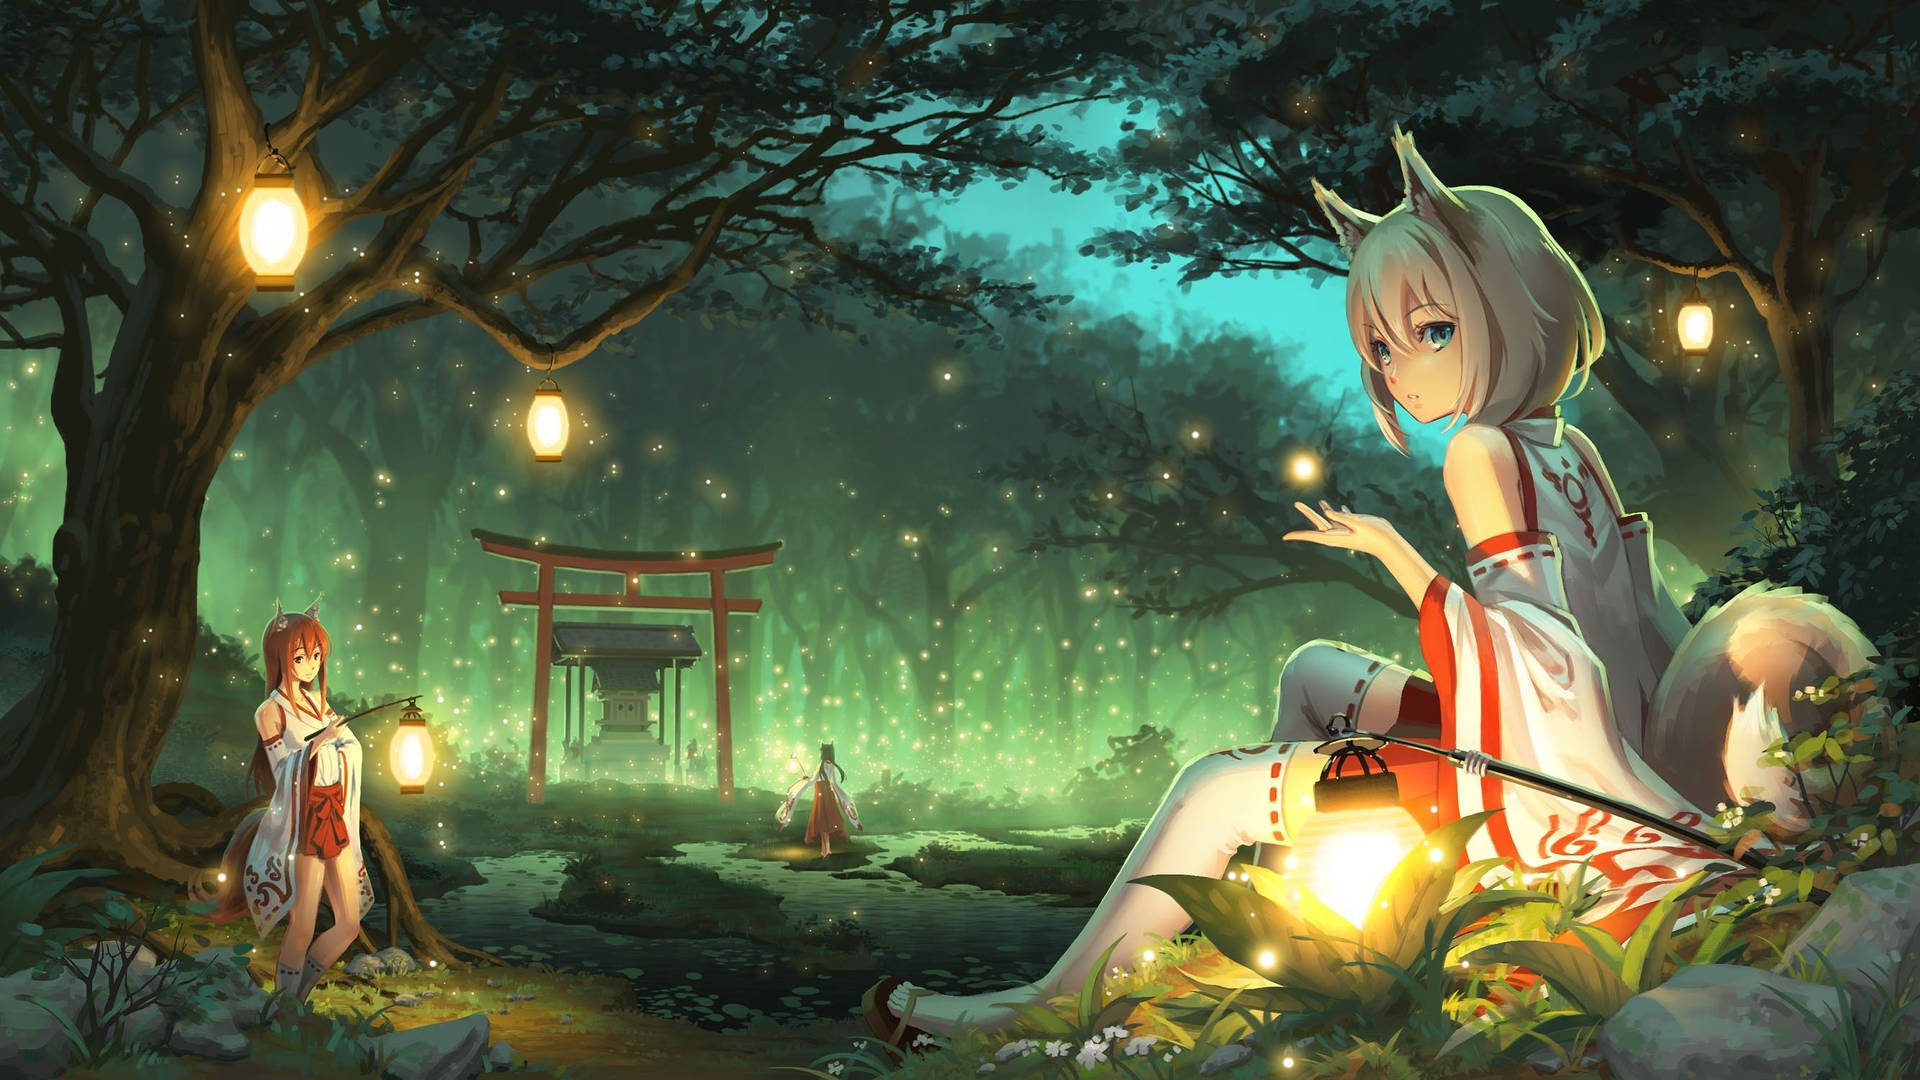 En pige sidder i skoven med lanterner Wallpaper